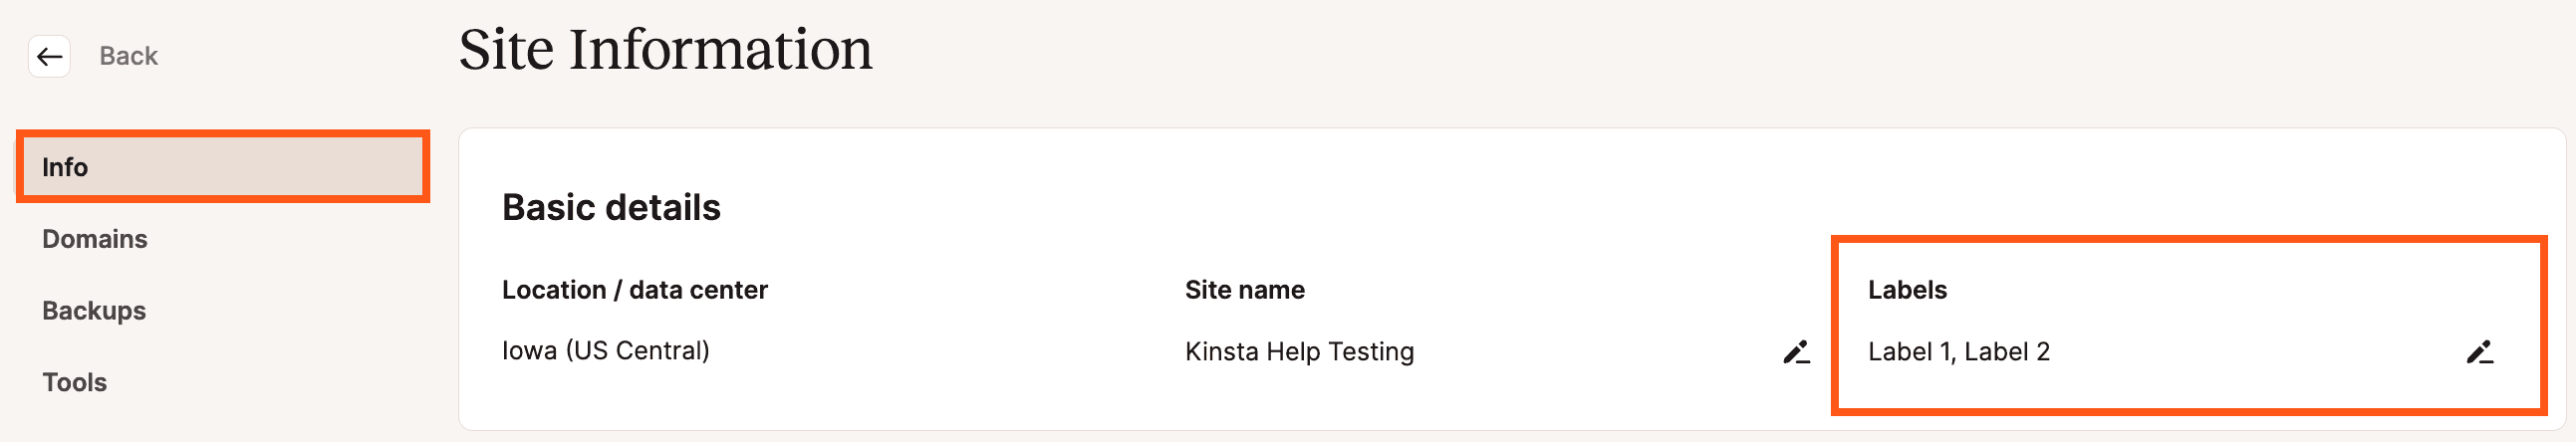 Site-labels op de pagina Site-informatie in MyKinsta.